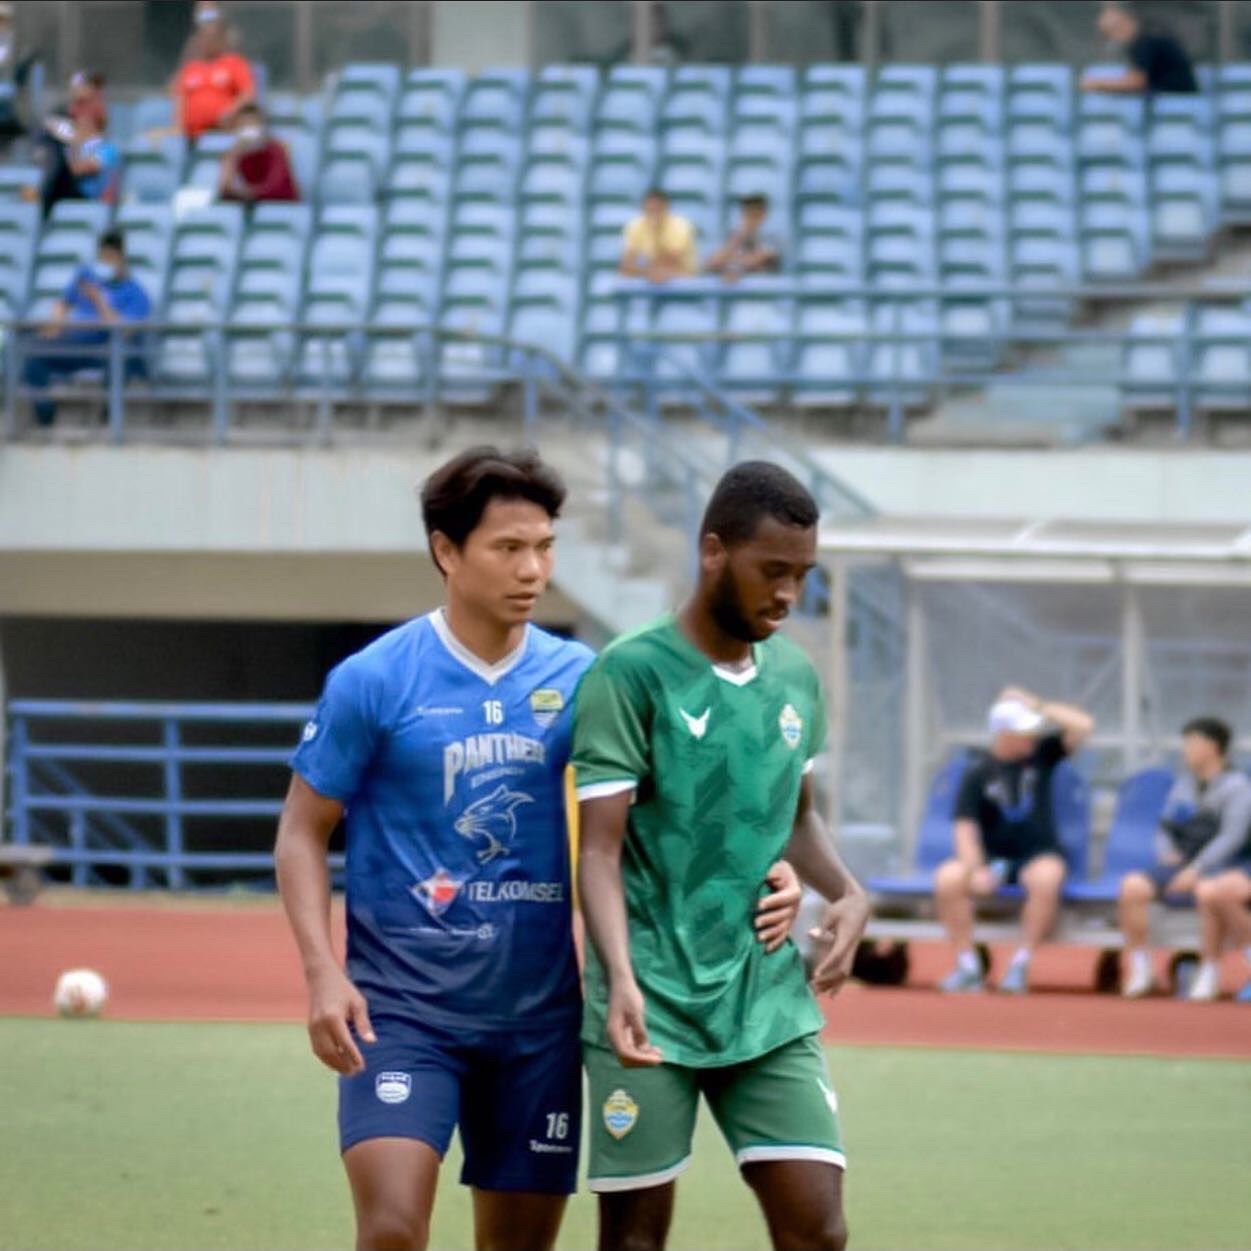 Aidil Usman Diarra (hijau) saat Friendly Match versus Persib Bandung, Juli 2021.